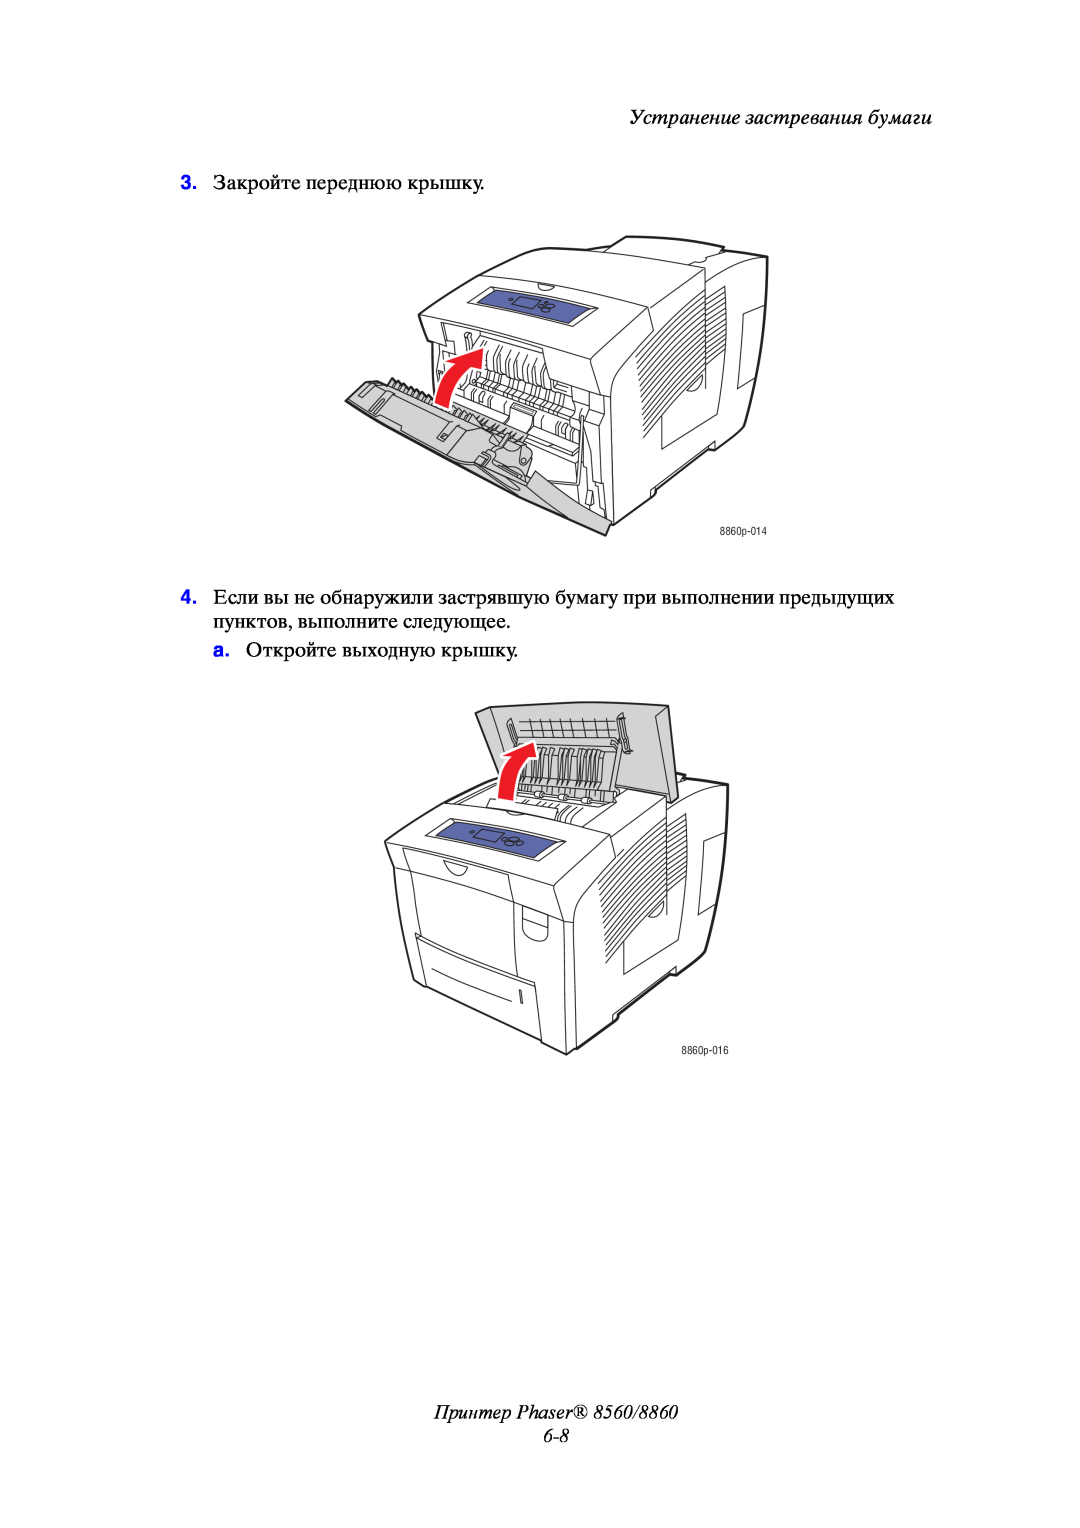 Xerox Принтер Phaser 8560/8860, Устранение застревания бумаги, 3. Закройте переднюю крышку, a. Откройте выходную крышку 